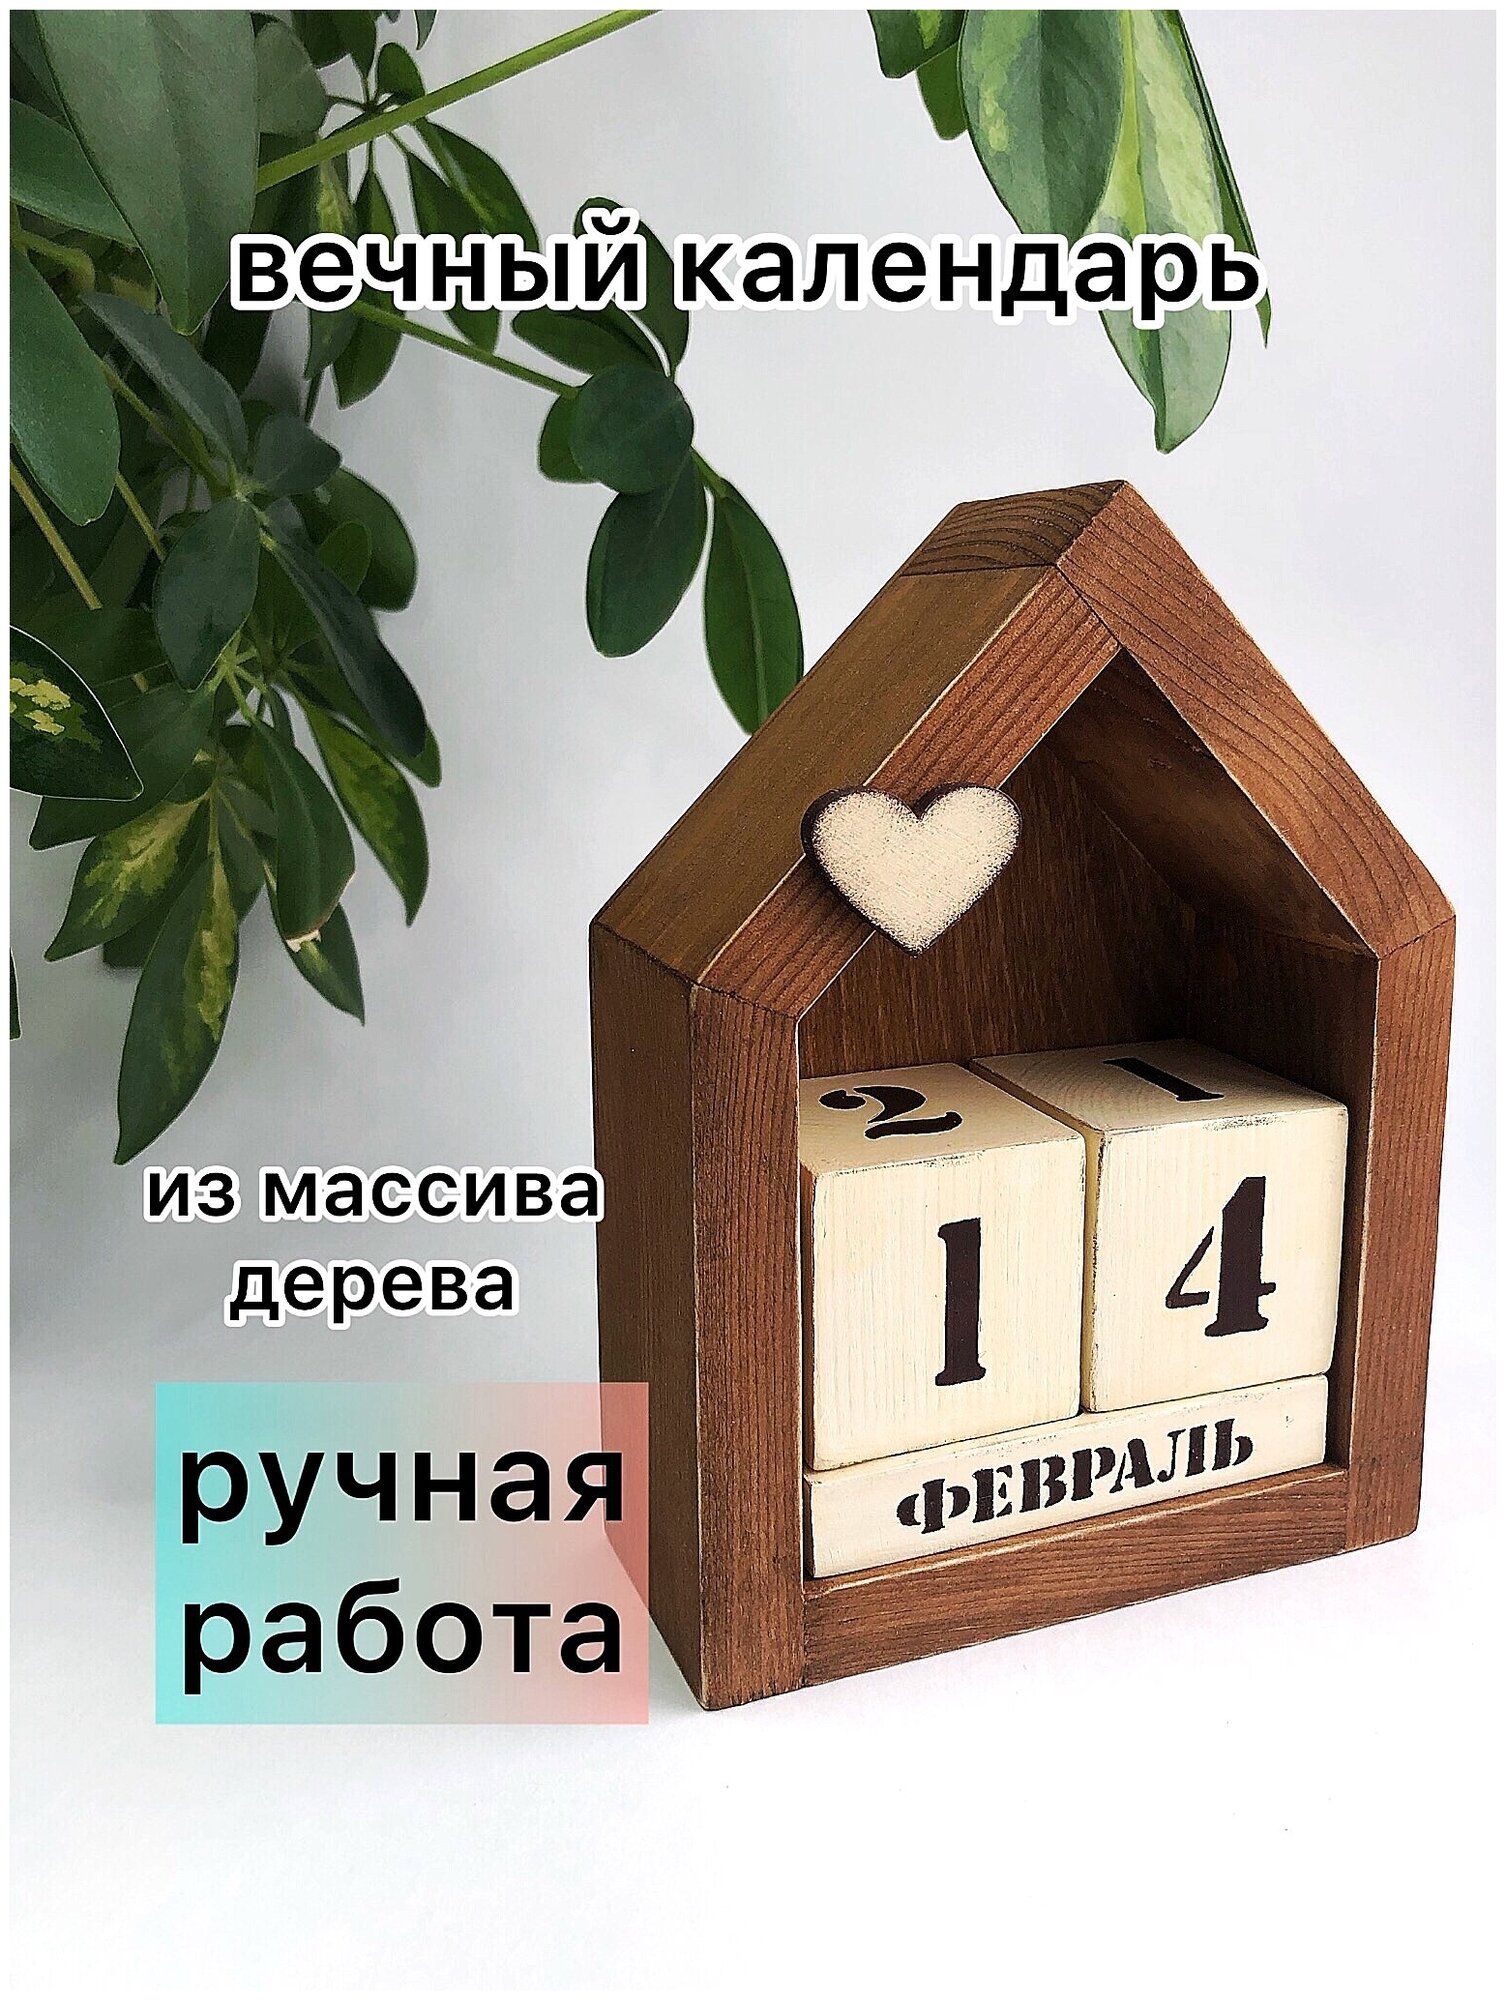 Вечный календарь Домик/ календарь из дерева — купить в интернет-магазине  по низкой цене на Яндекс Маркете